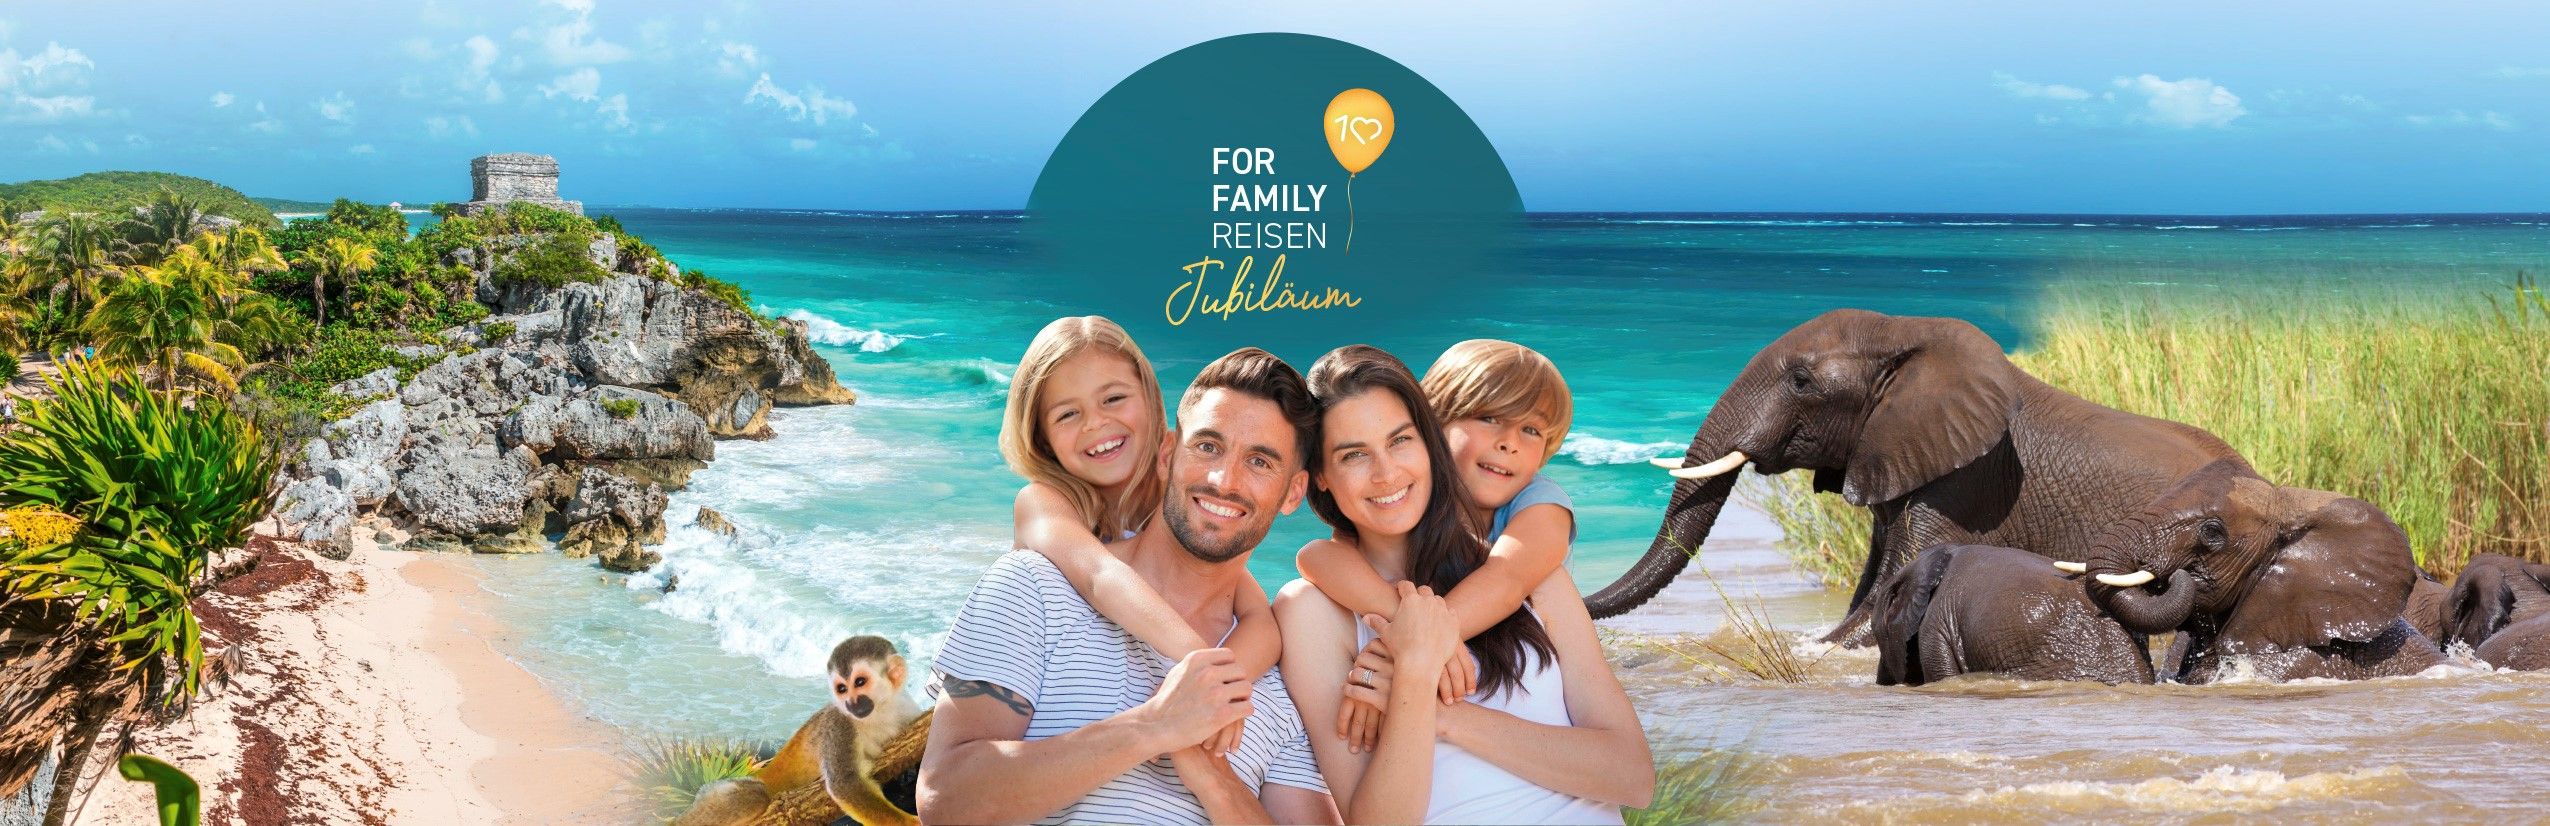 Familienreisen - For Family Reisen - 10 jähriges Jubiläum